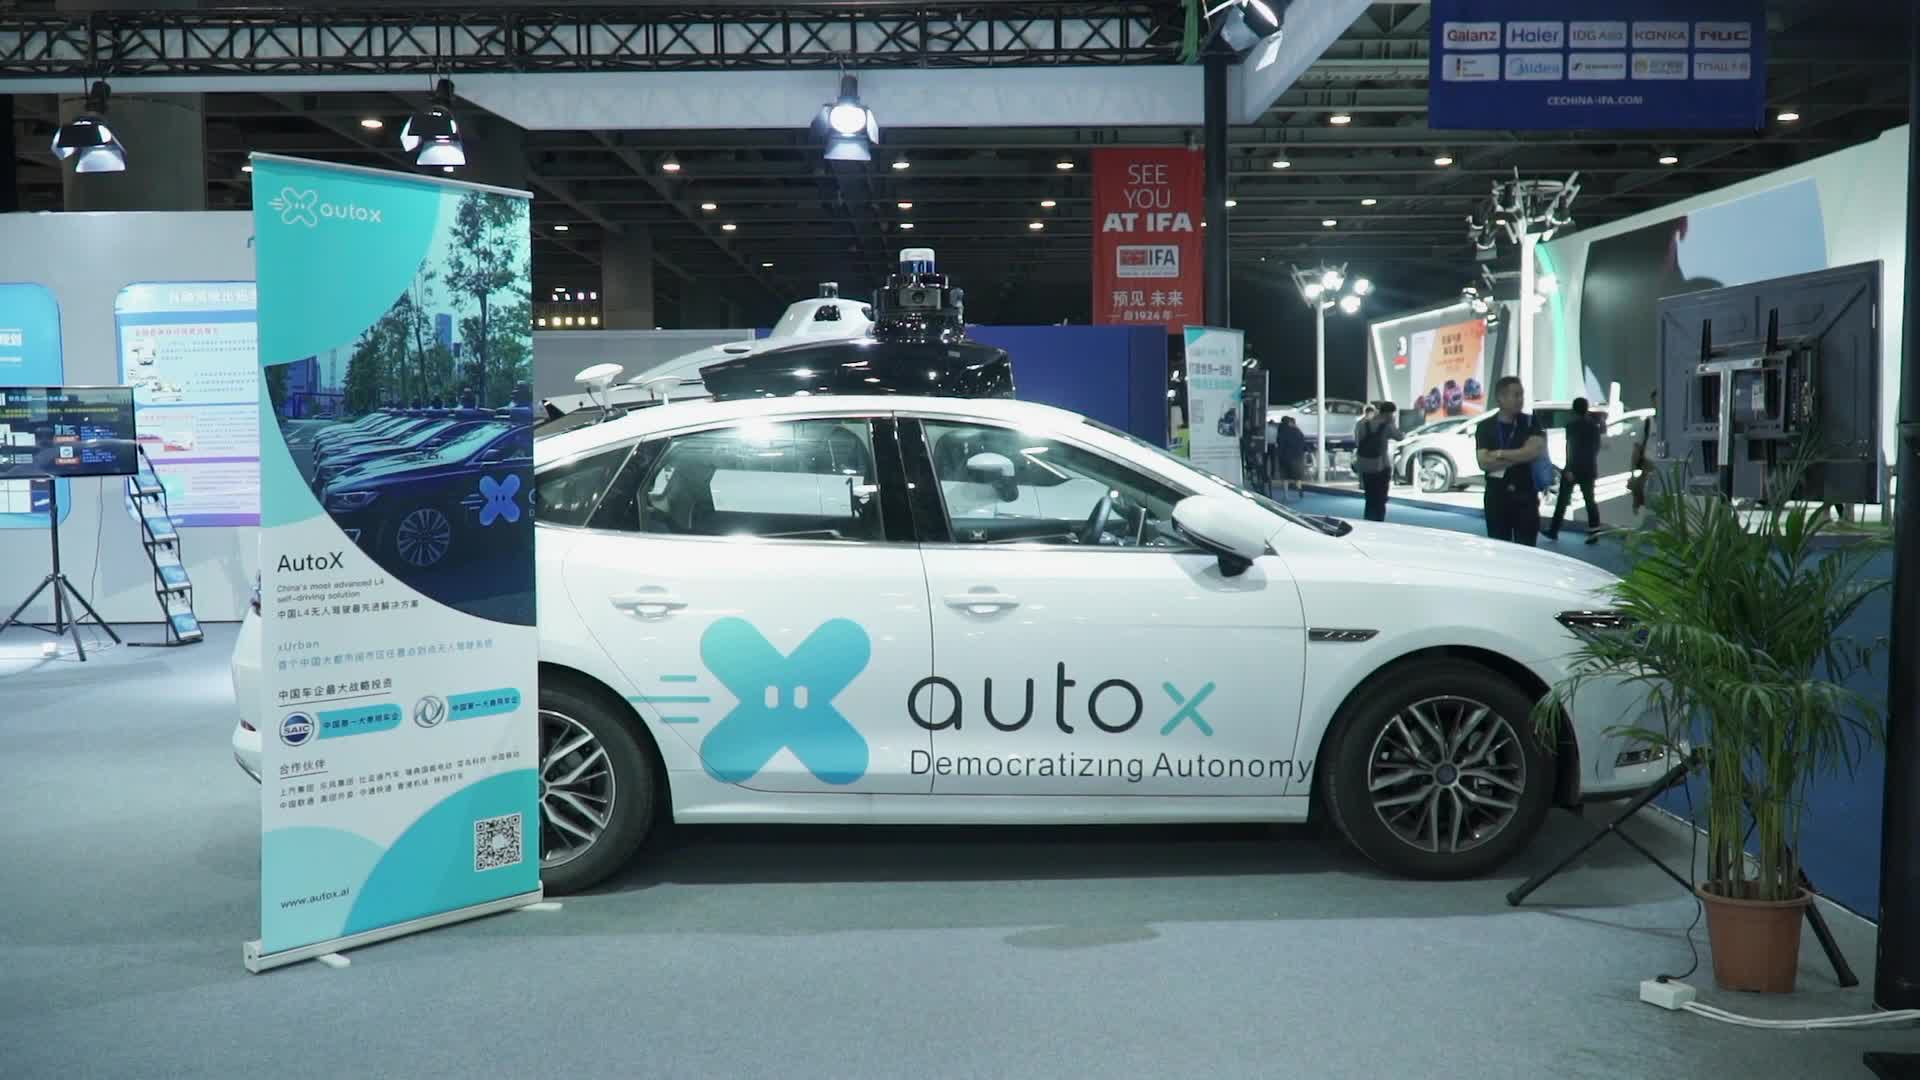 Автономная служба вызова такси RoboTaxi теперь доступна в AutoX в Шанхае